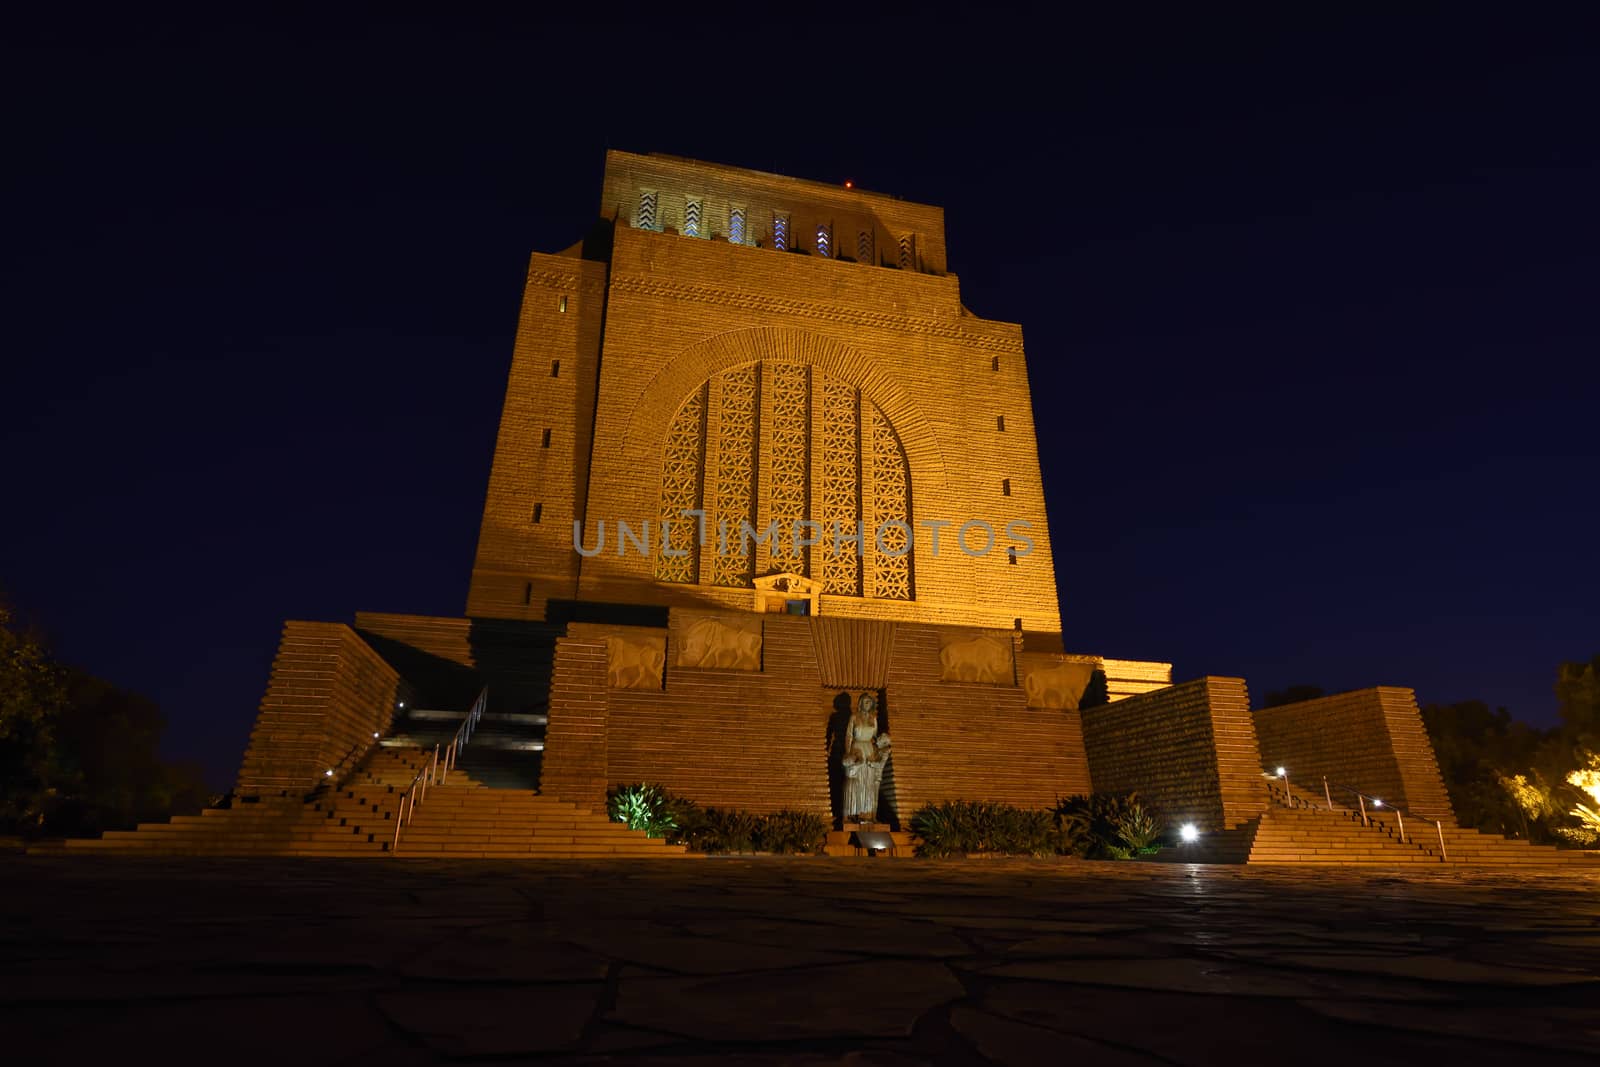 The Voortrekker Monument National Heritage At Night by jjvanginkel